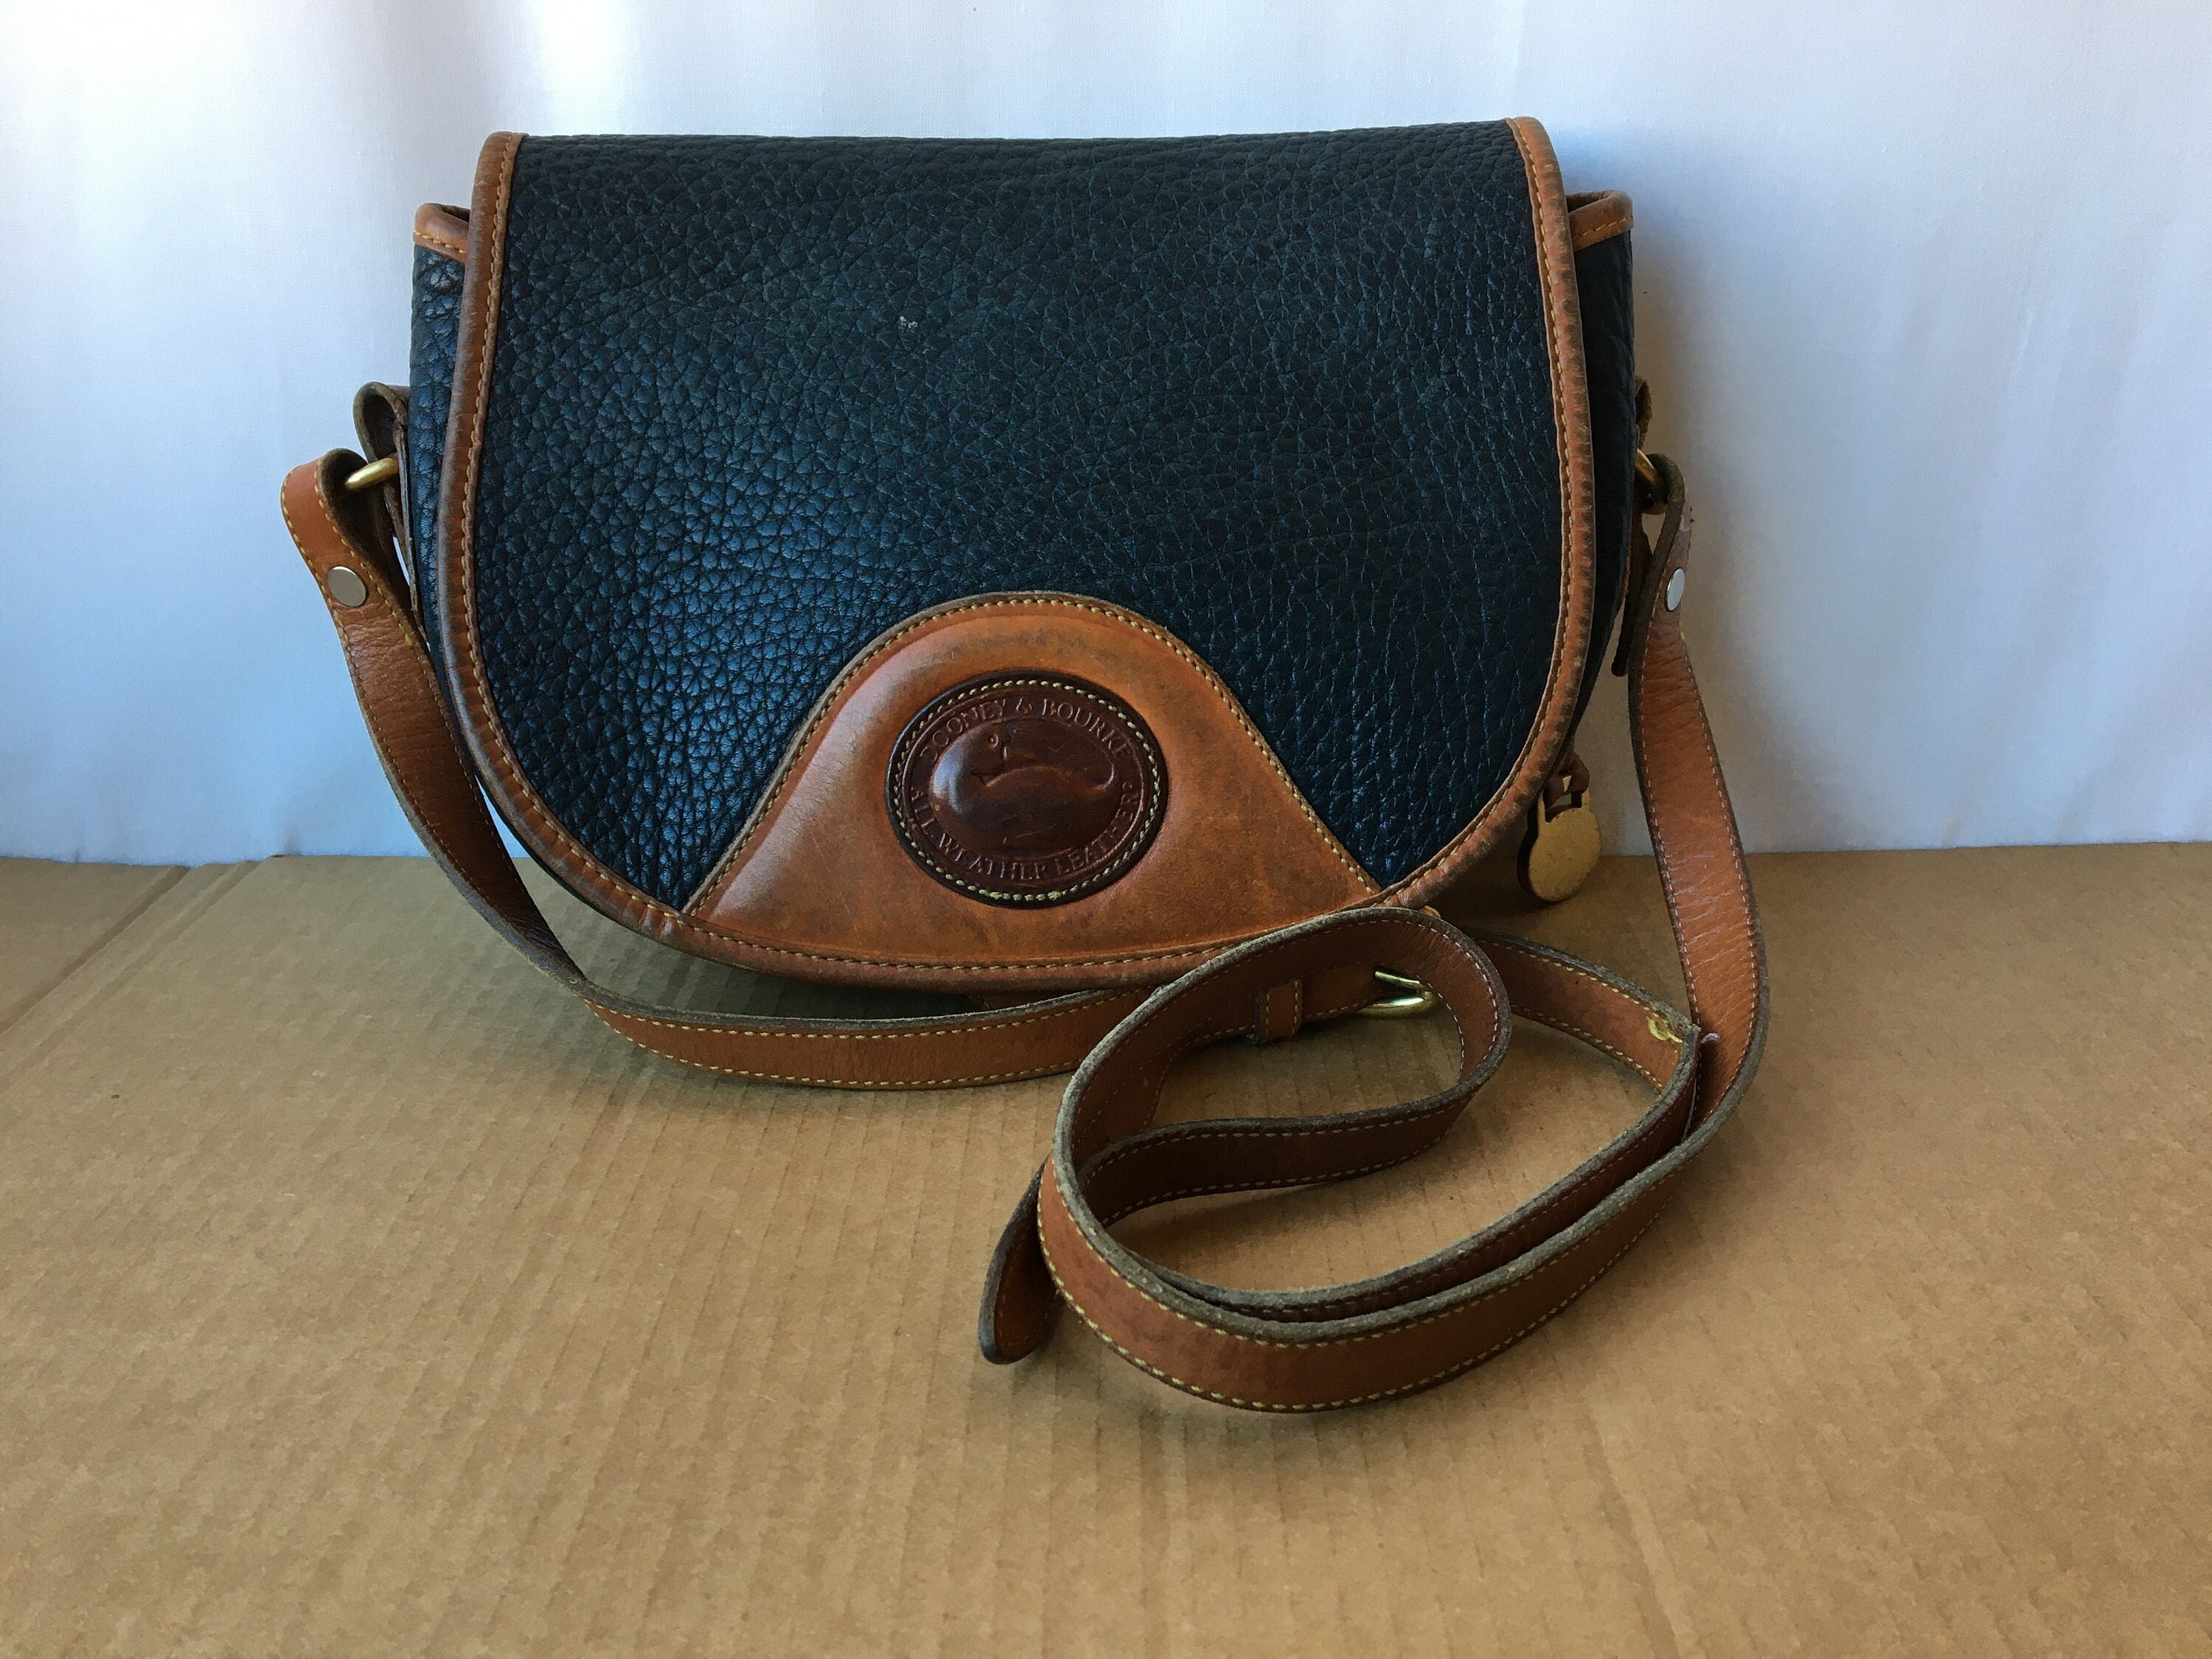 Vintage Dooney & Bourke Pebbled Leather Flap Shoulder Handbag - Sale